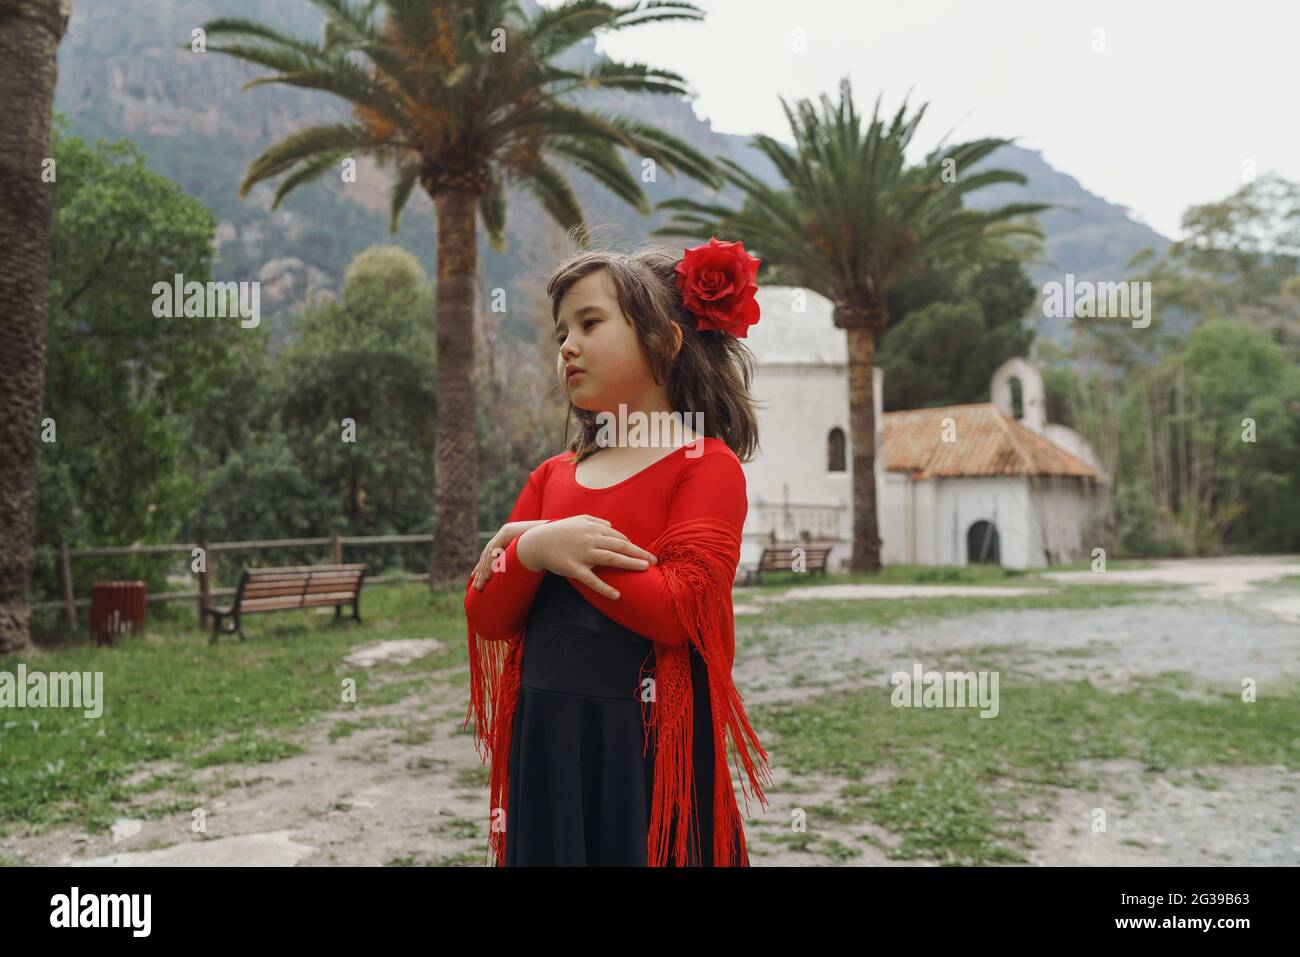 Little girl standing in the garden in Spanish dress Stock Photo